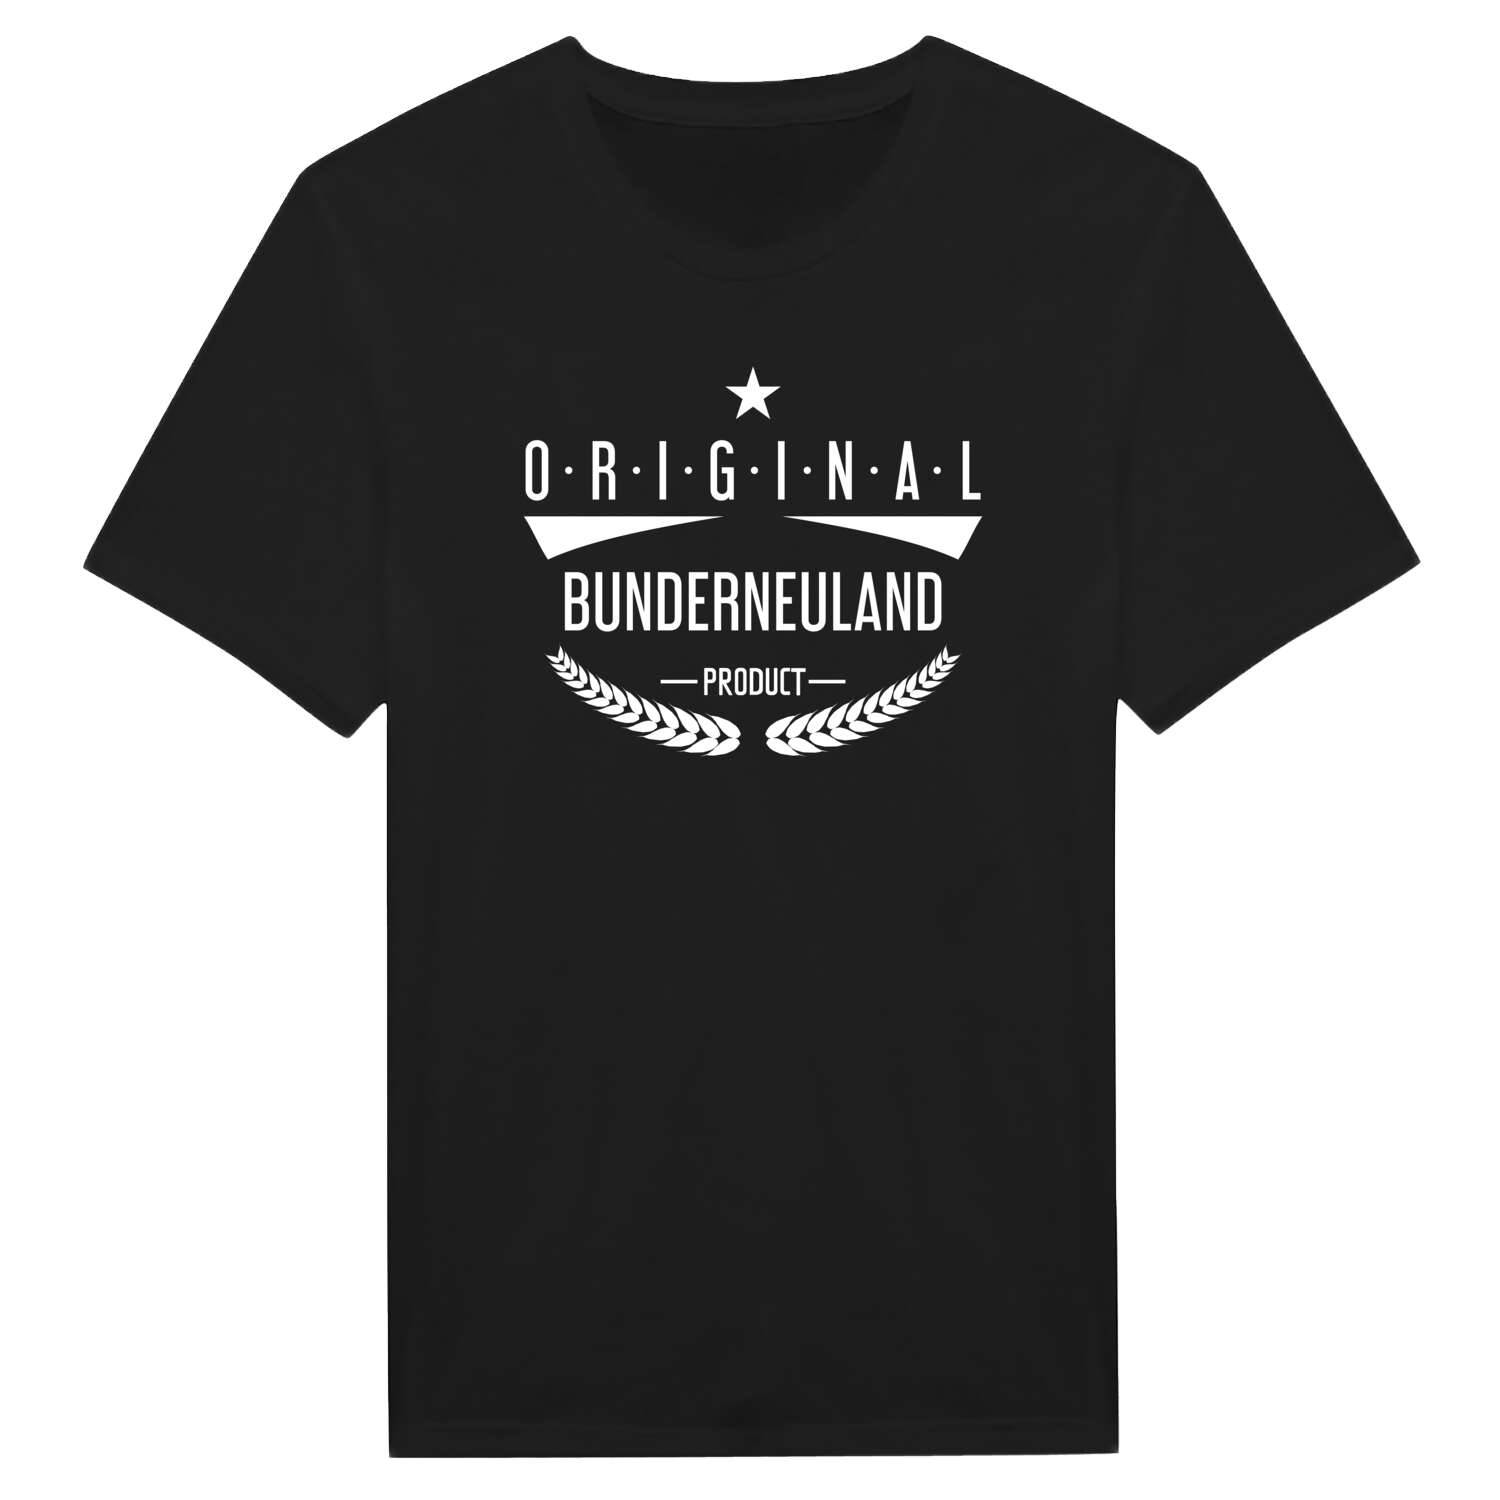 Bunderneuland T-Shirt »Original Product«